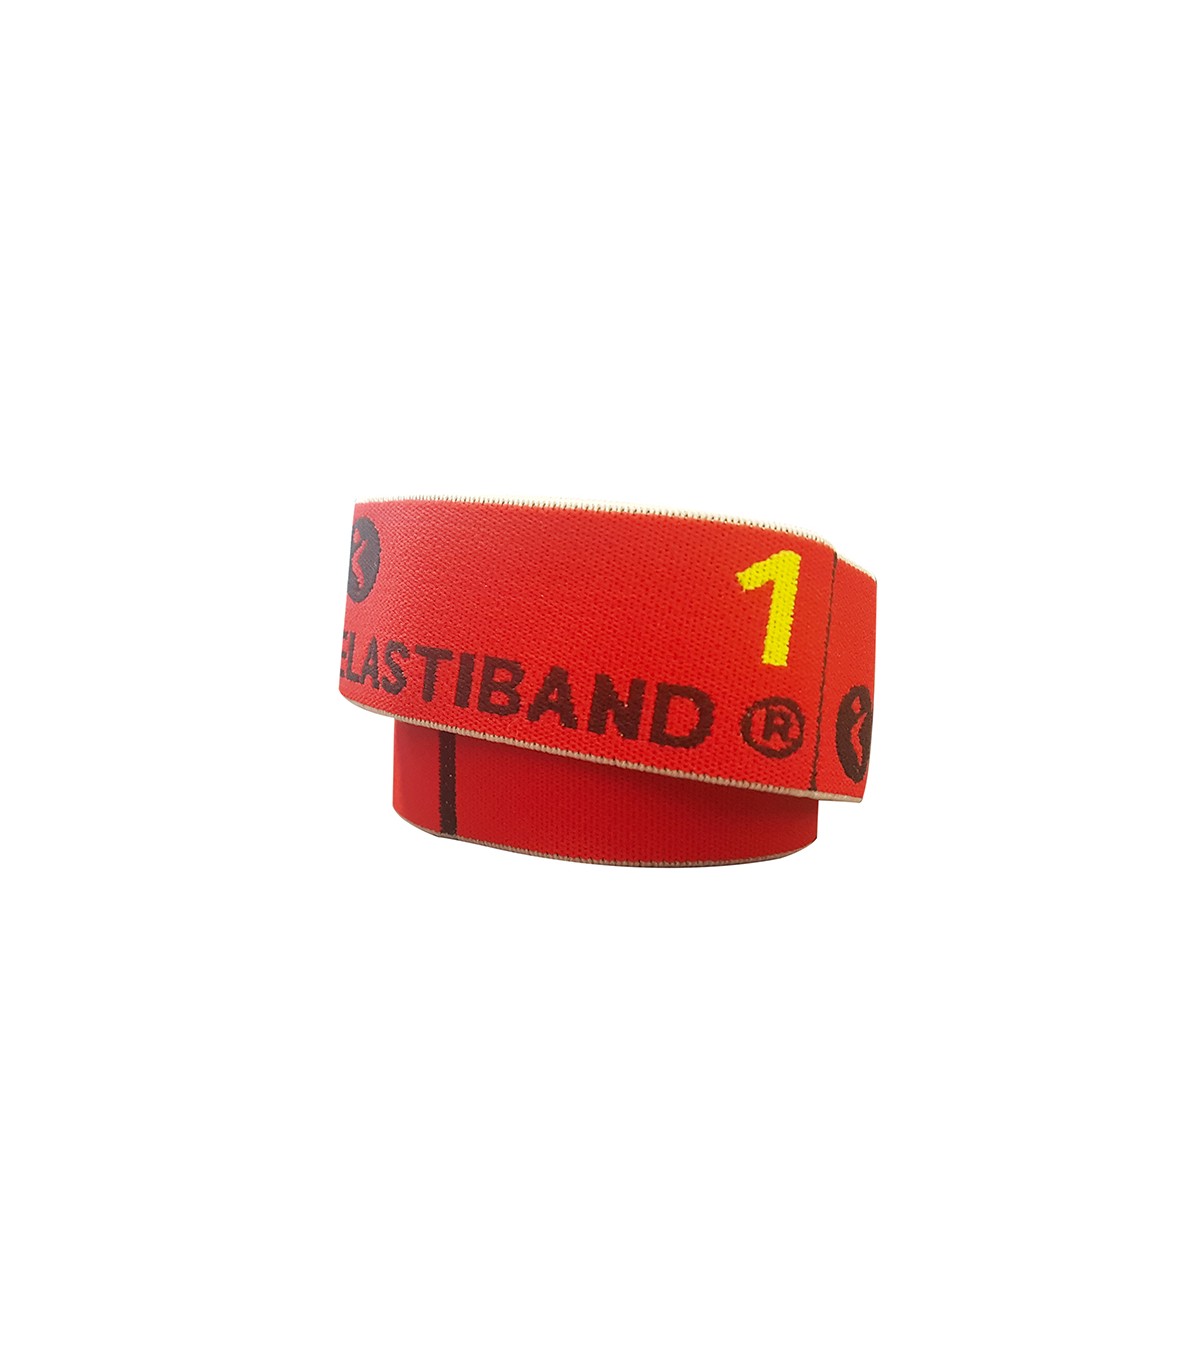 Banda elástica de agarre múltiple Elastiband + QR. Rojo. 10 kg